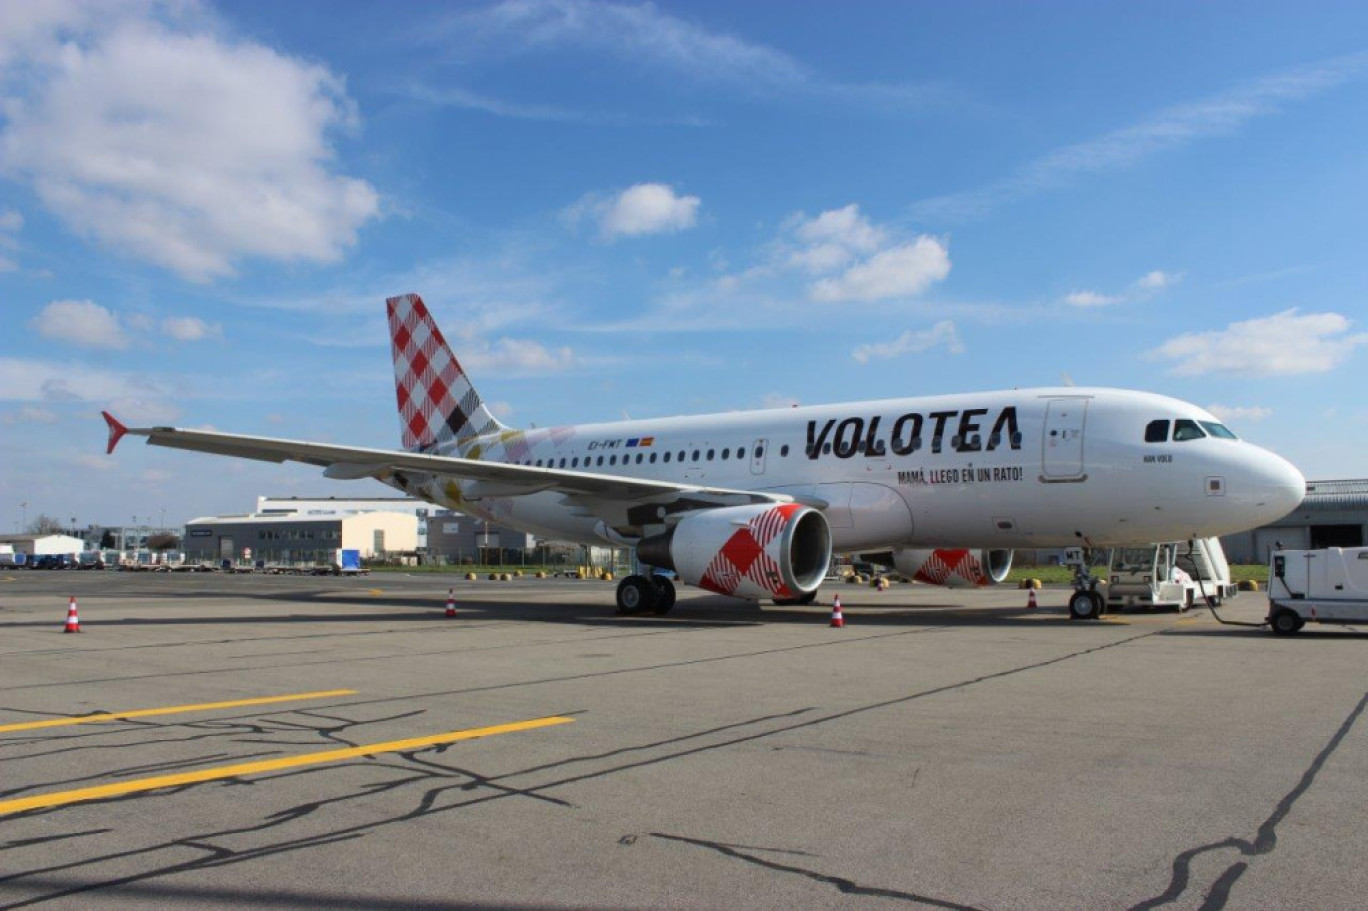 Avec 22 destinations depuis sa base lilloise, Volotea a transporté 173 000 passagers cet été